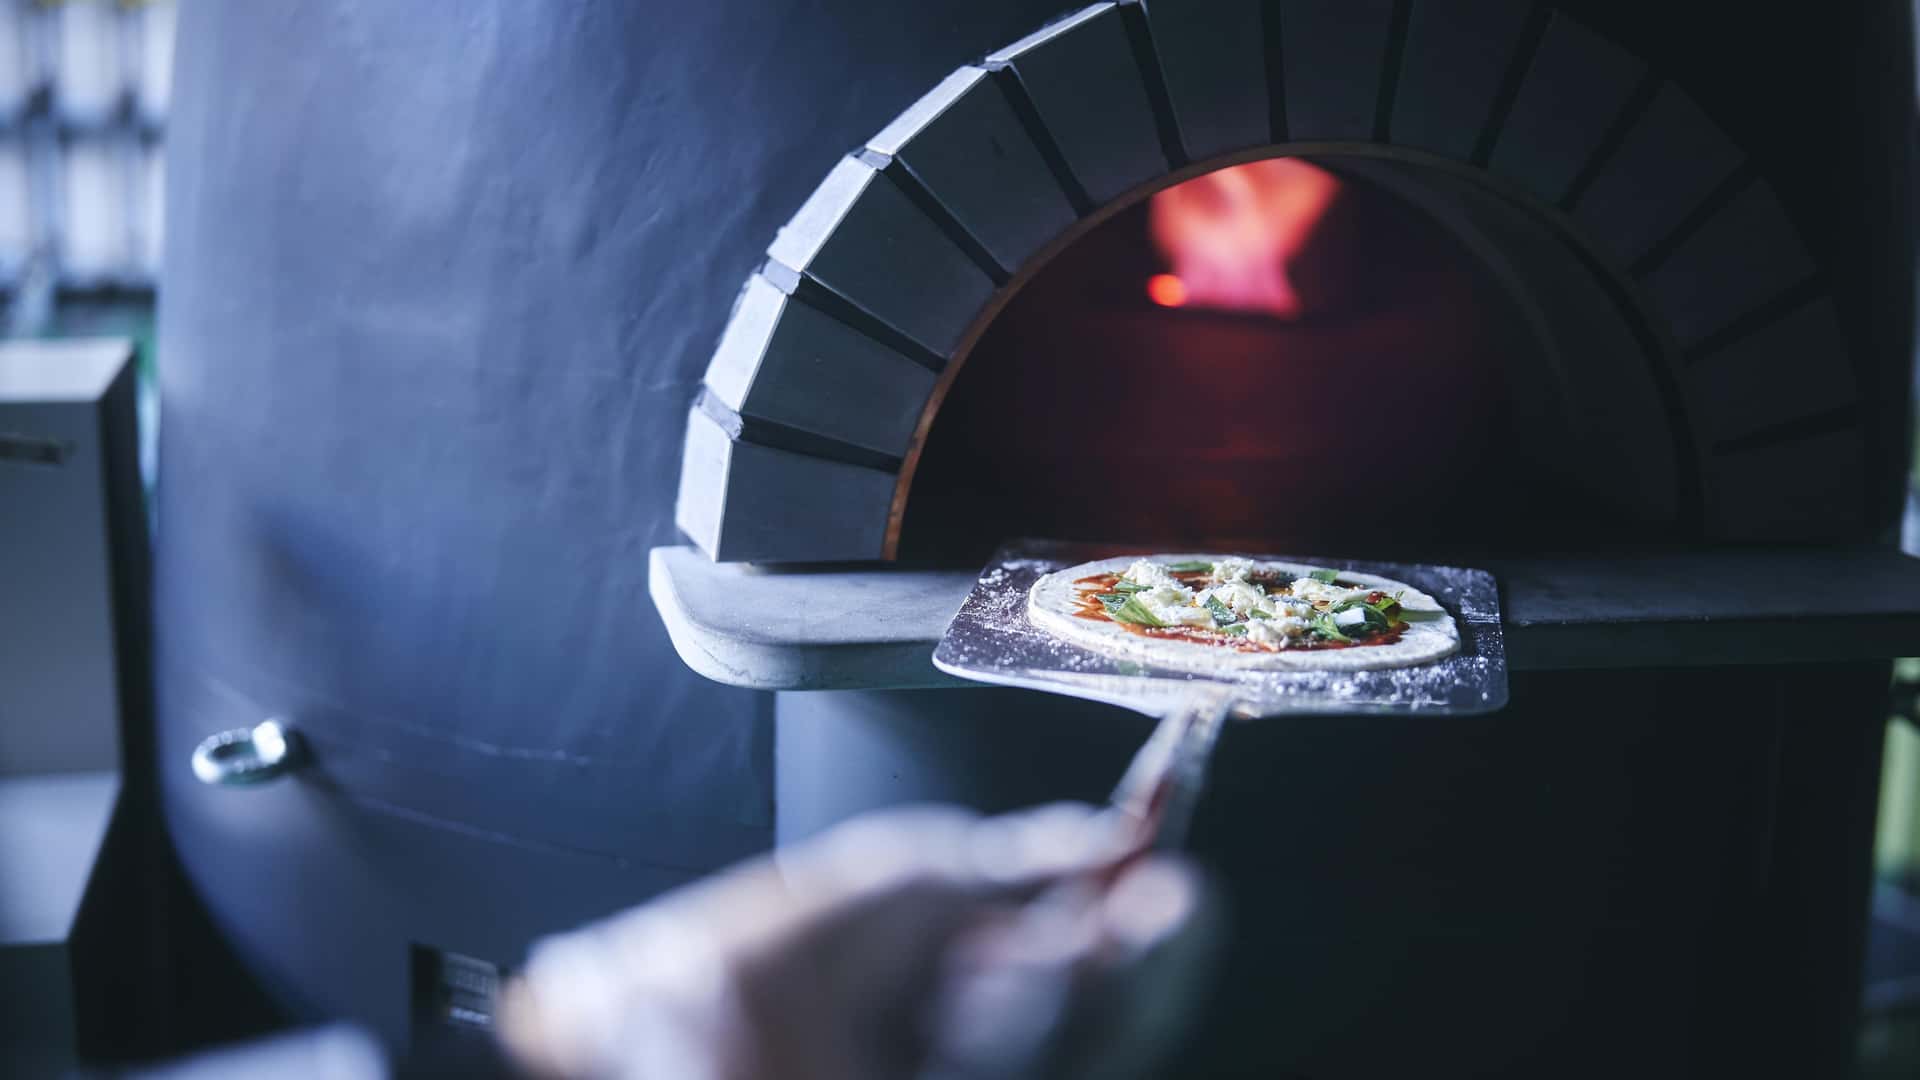 Toyota решила приготовить пиццу в каменной печи используя водород